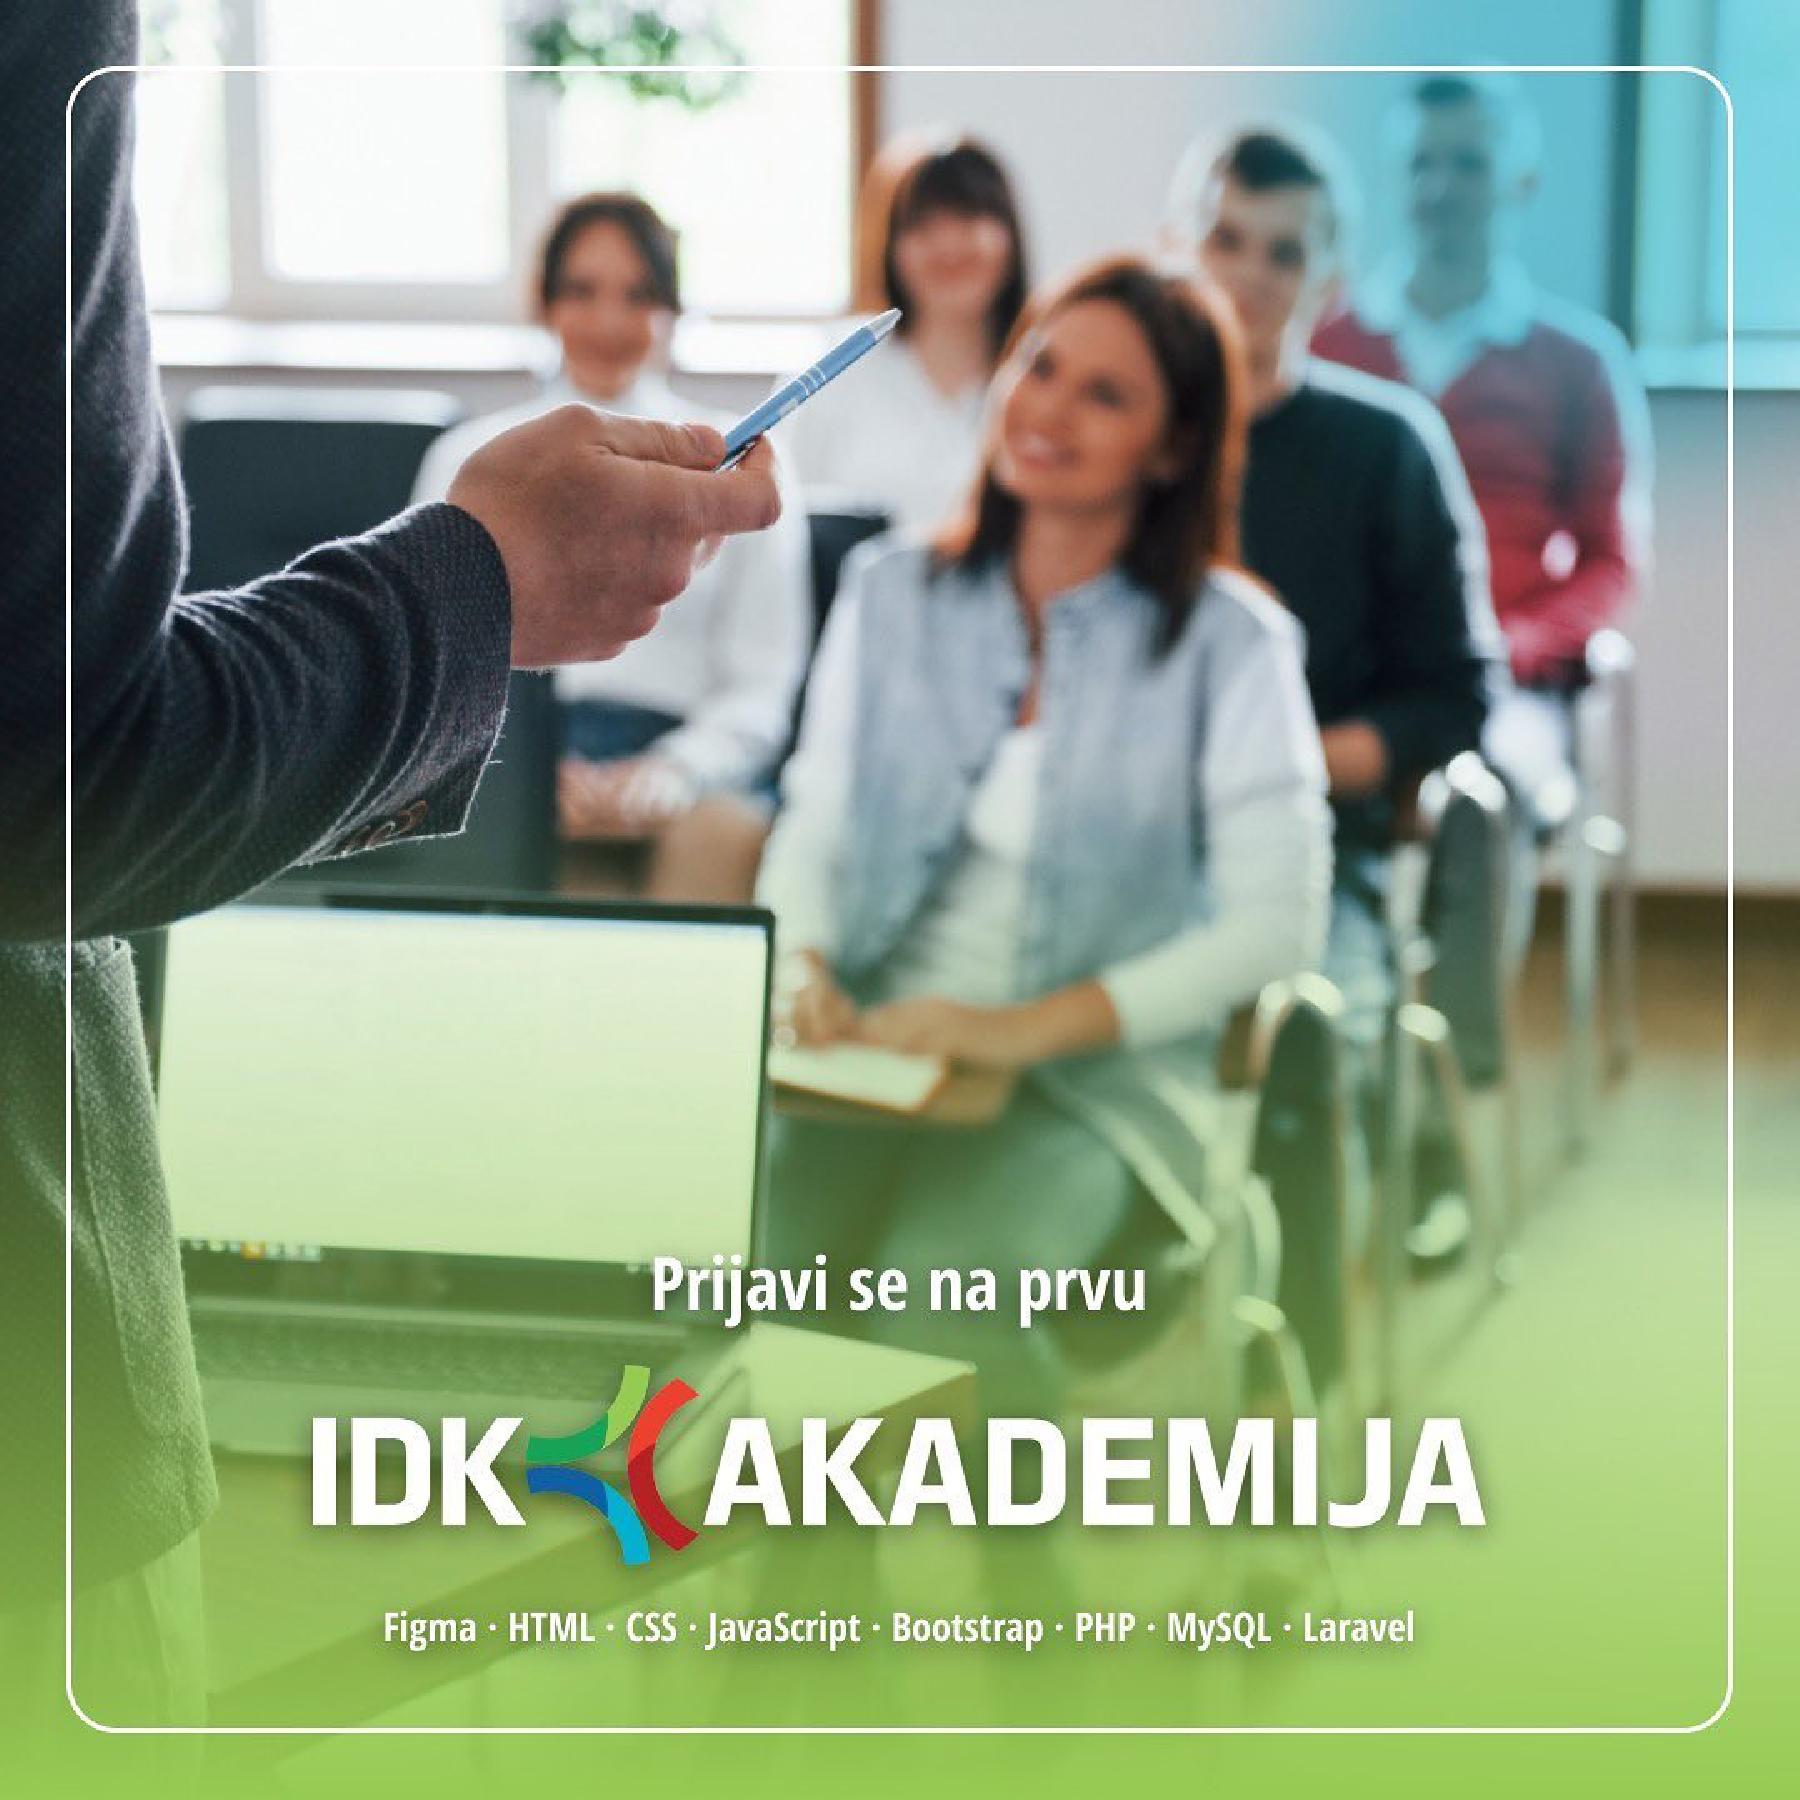 Počele prijave za prvu IDK Akademiju: Mjesto gdje početnici stiču znanja i vještine u dizajnu i programiranju